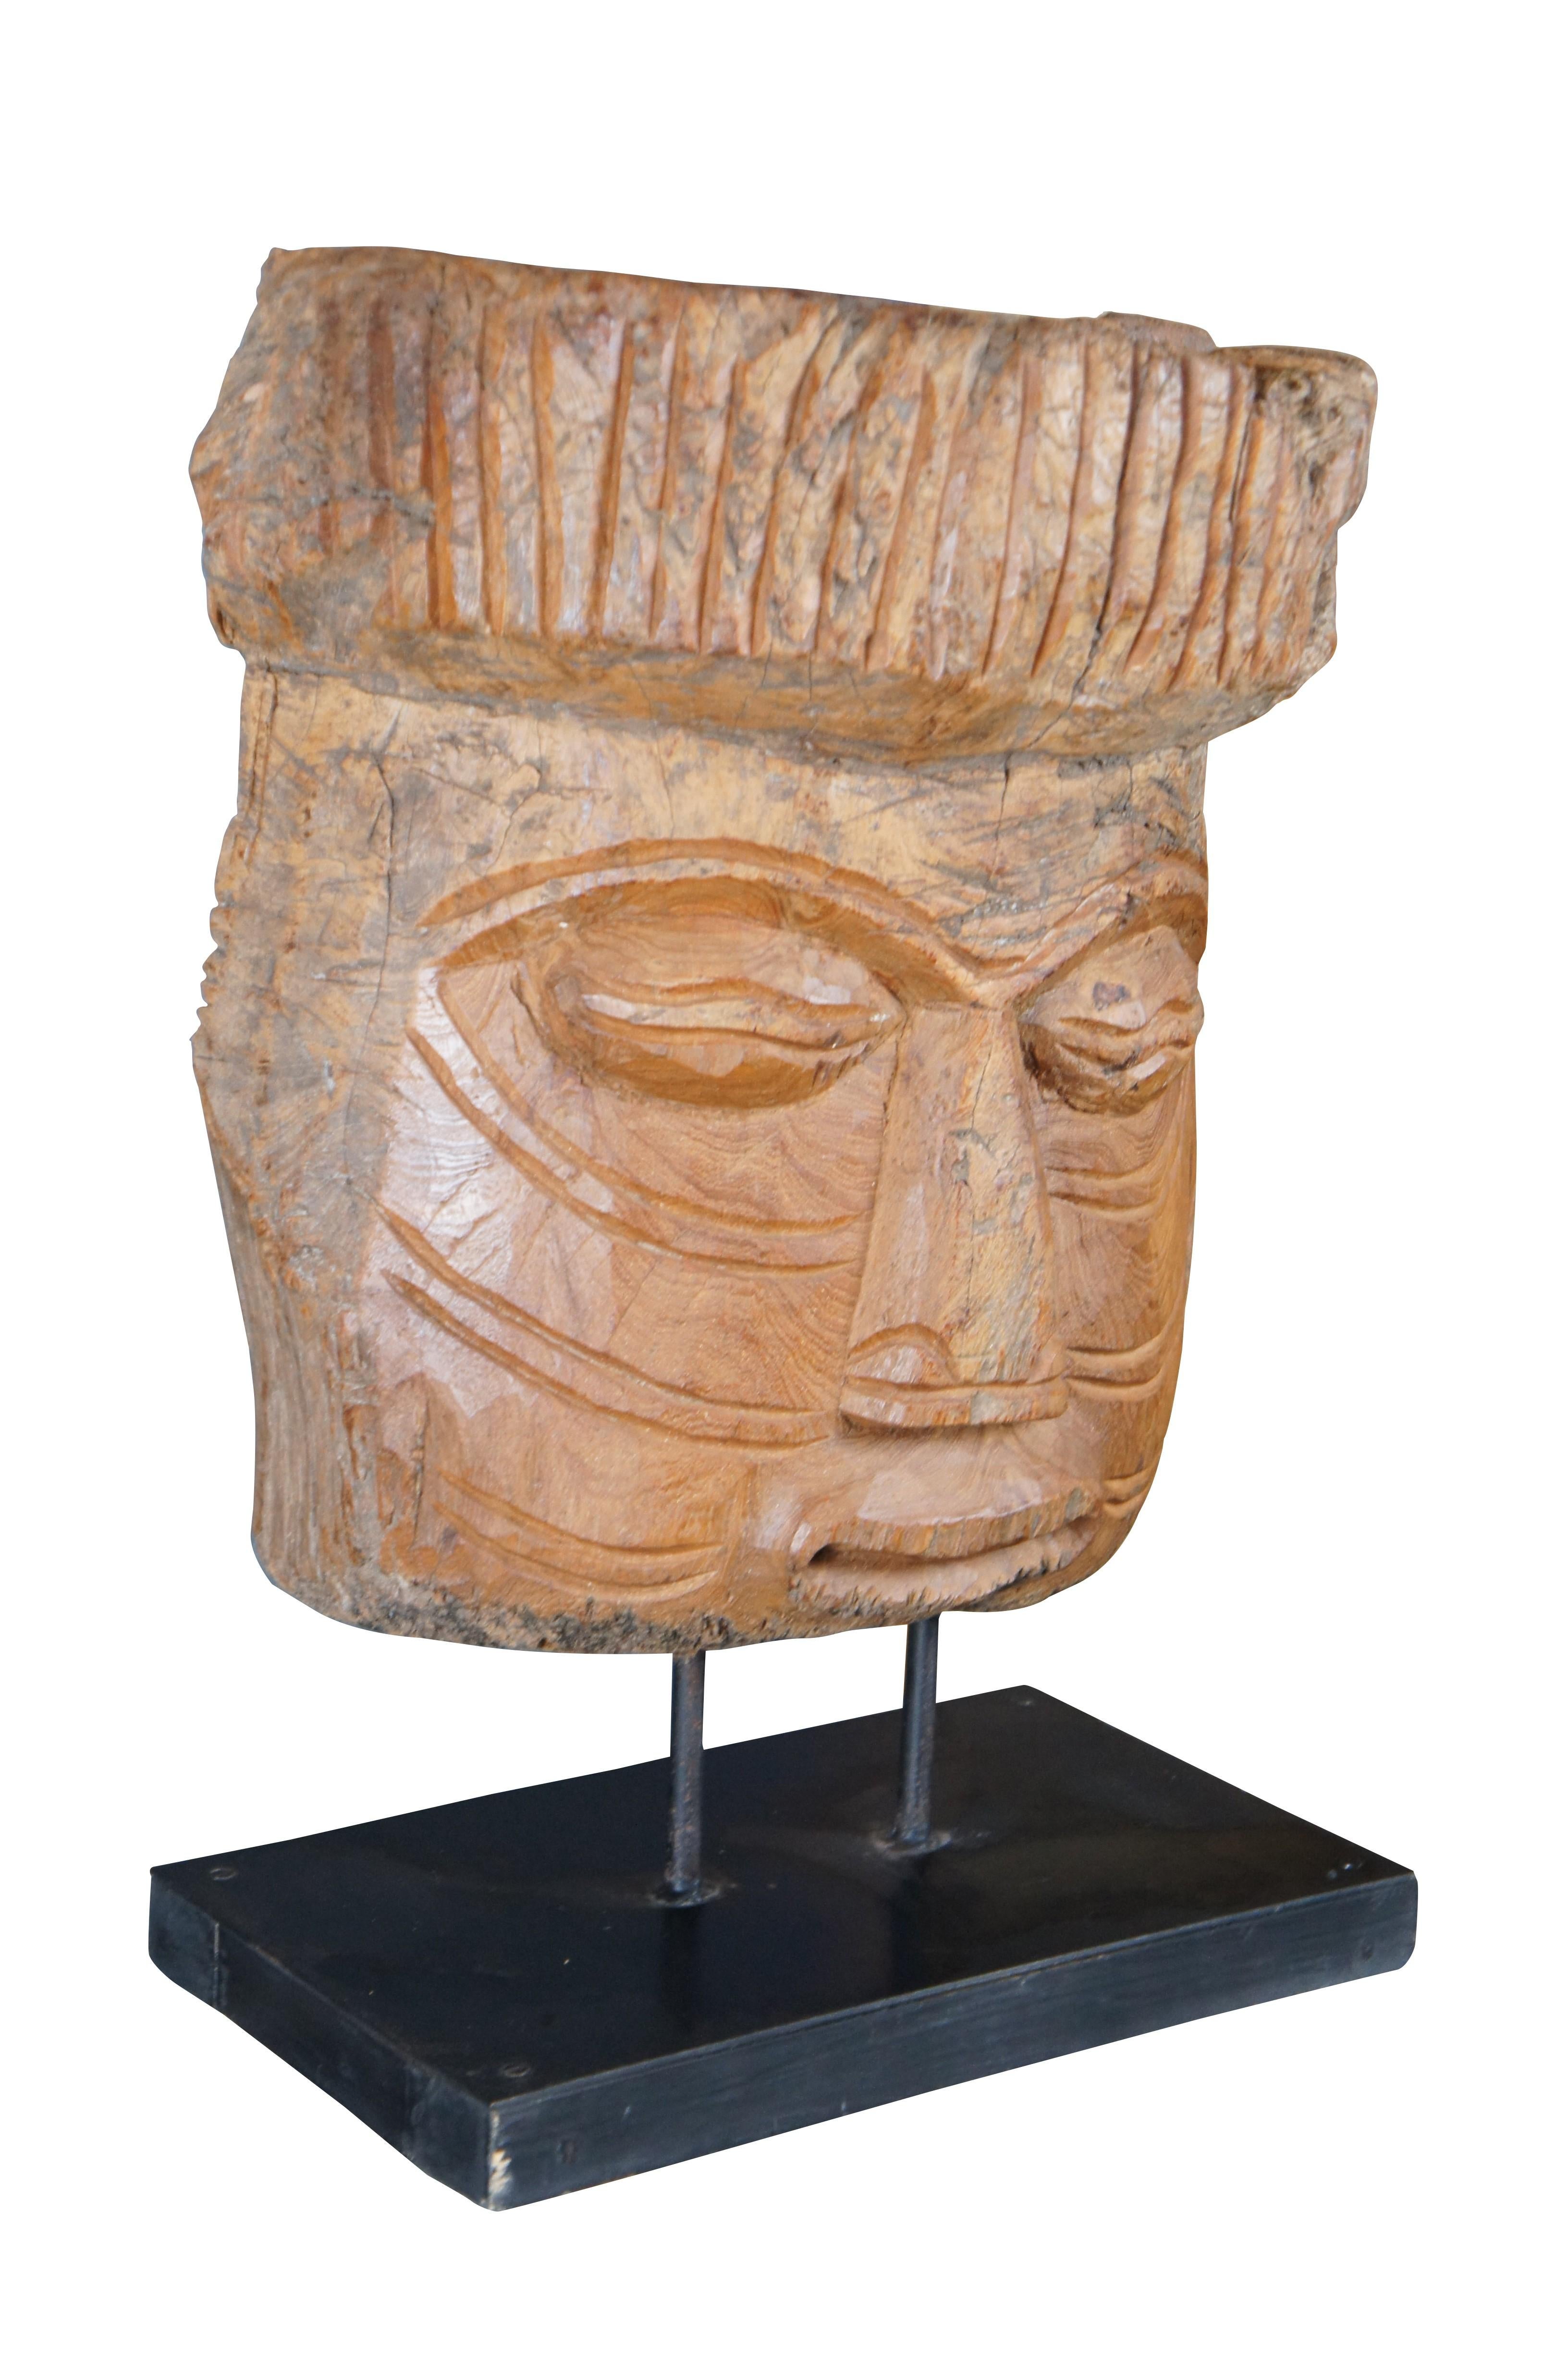 Masque tribal de style mésoaméricain de la fin du 20e siècle sur un support en bois noir. Le masque est sculpté dans un tronc d'arbre avec des détails complexes.

Dimensions :
9,5